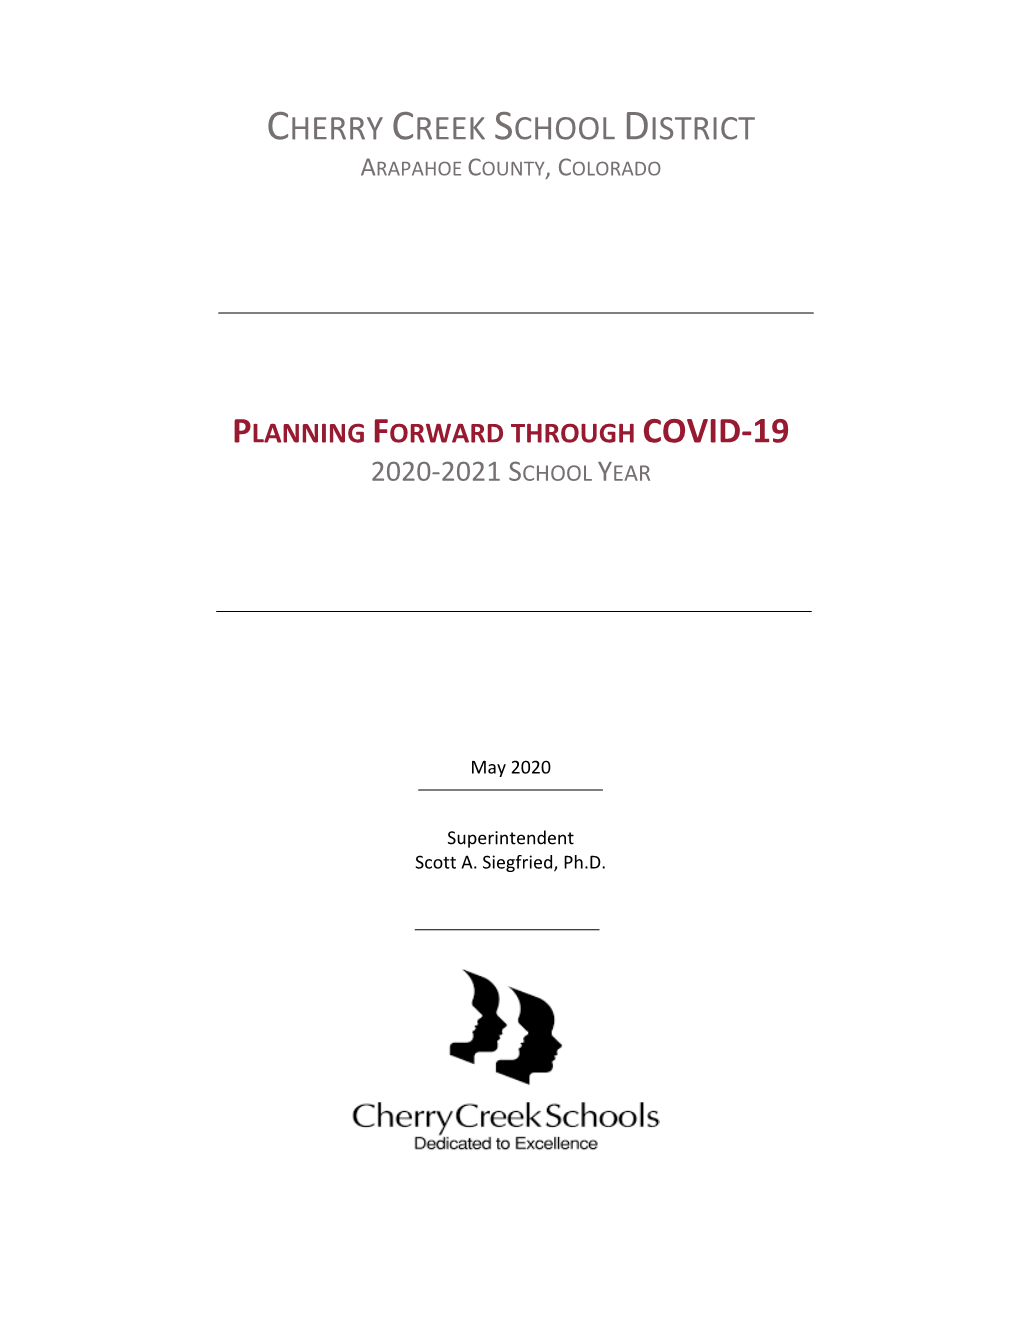 Planning Forward Through Covid-19 2020-2021 School Year